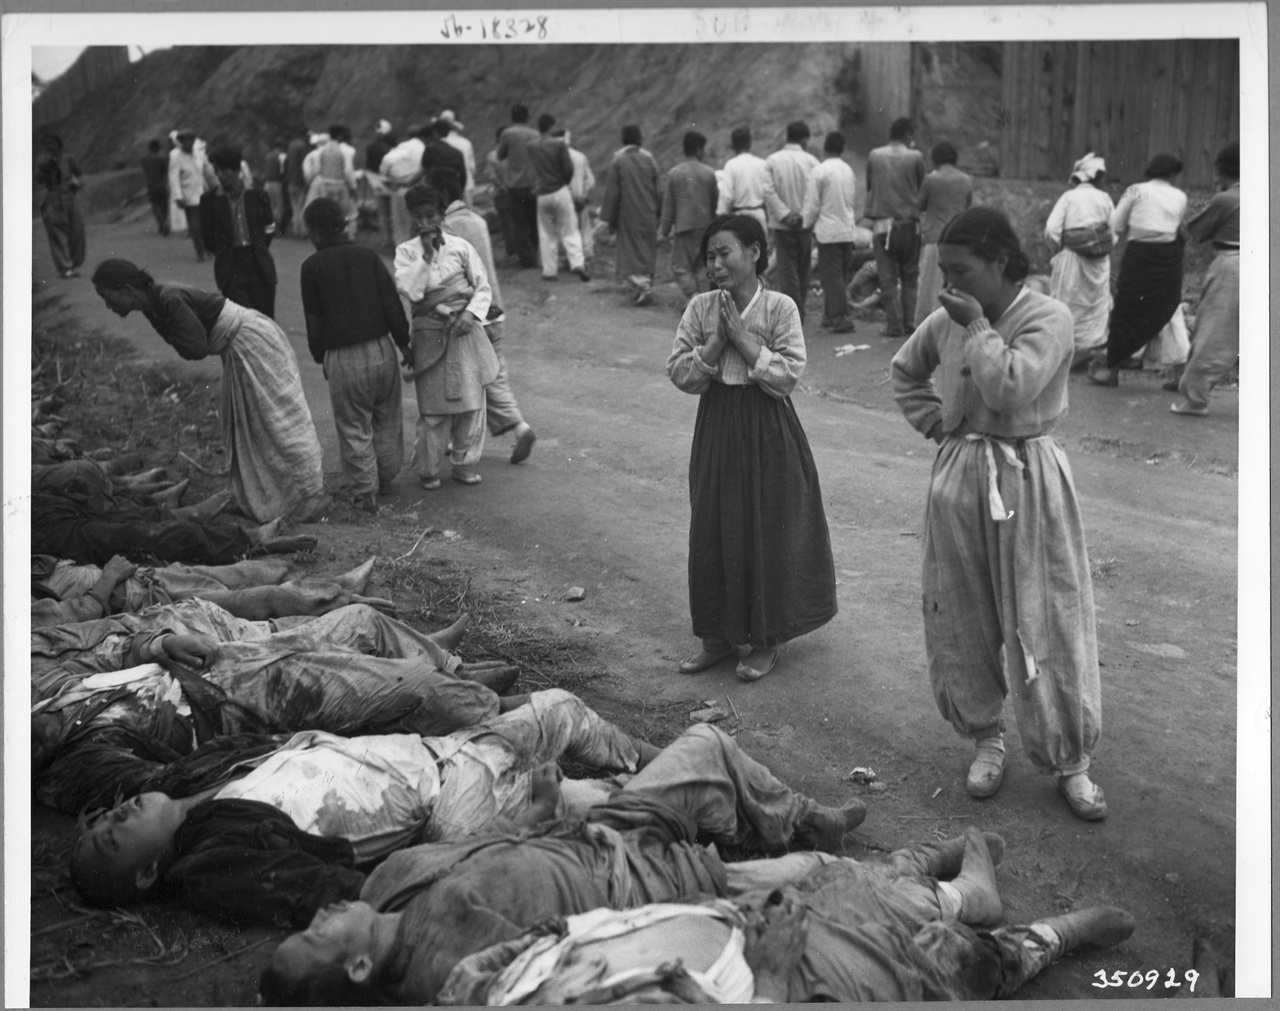  1950. 10. 19. 함흥, 300여 명의 정치범이 동굴에 불법 감금되어 질식해 죽었다. 유엔군이 점령한 뒤 이 시신들을 동굴에서 꺼내 늘어놓자 유족들이 가족을 확인하며 울부짖고 있다.